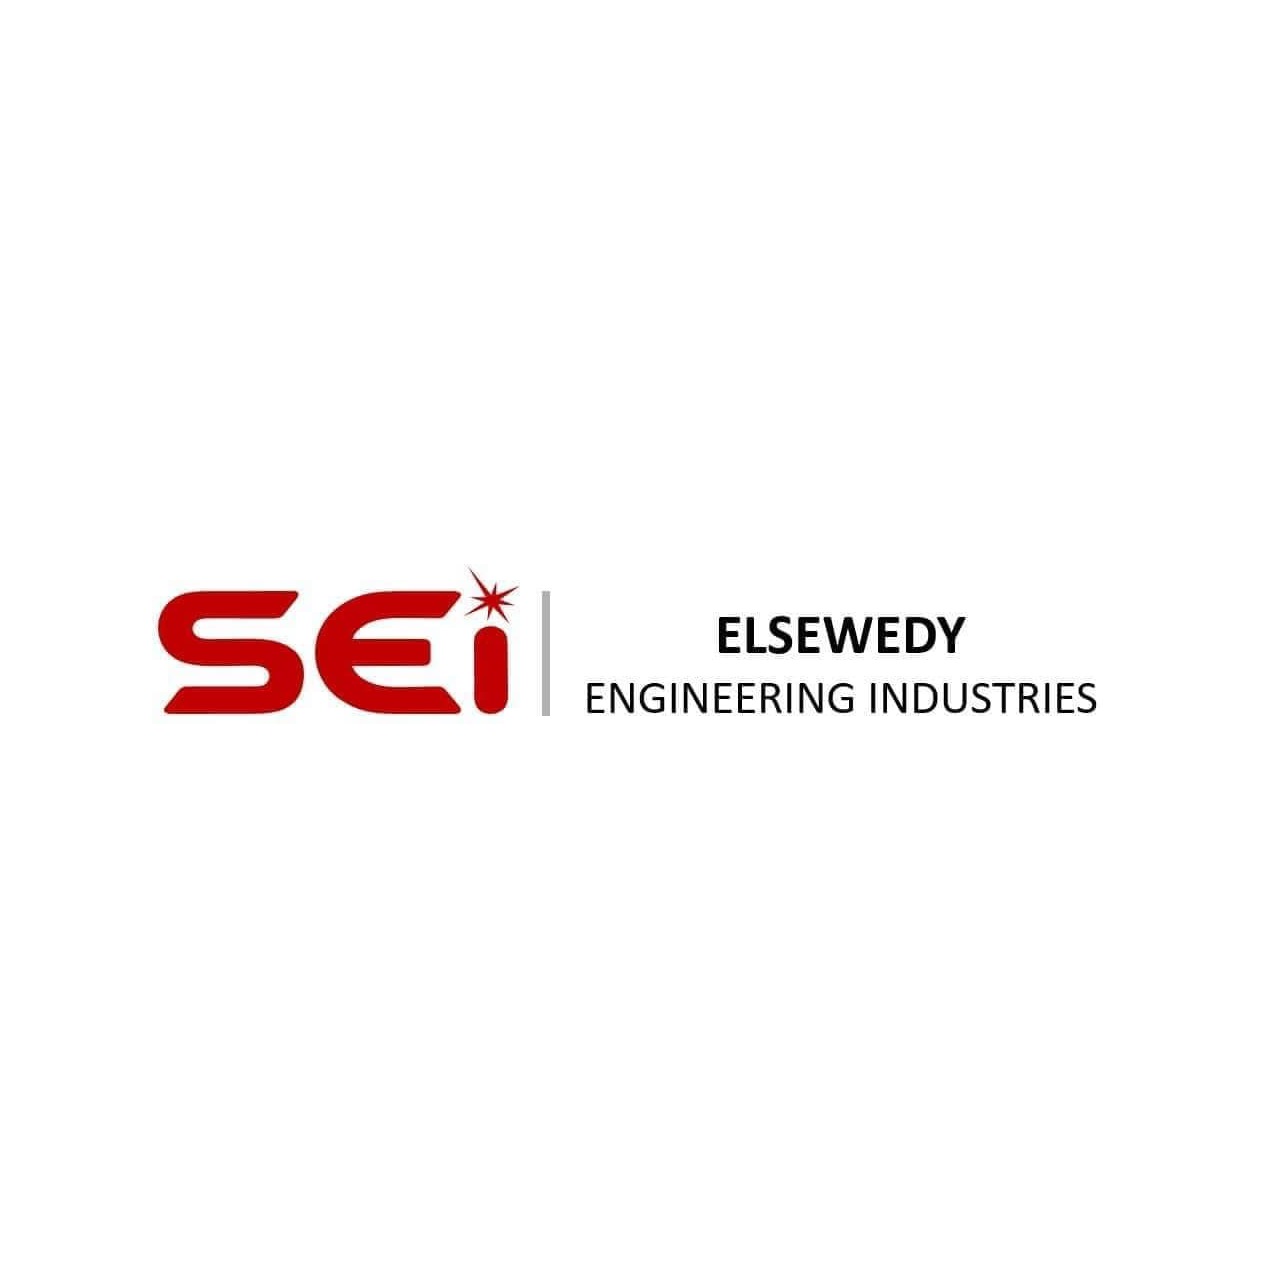 ElSewedy Engineering Industries